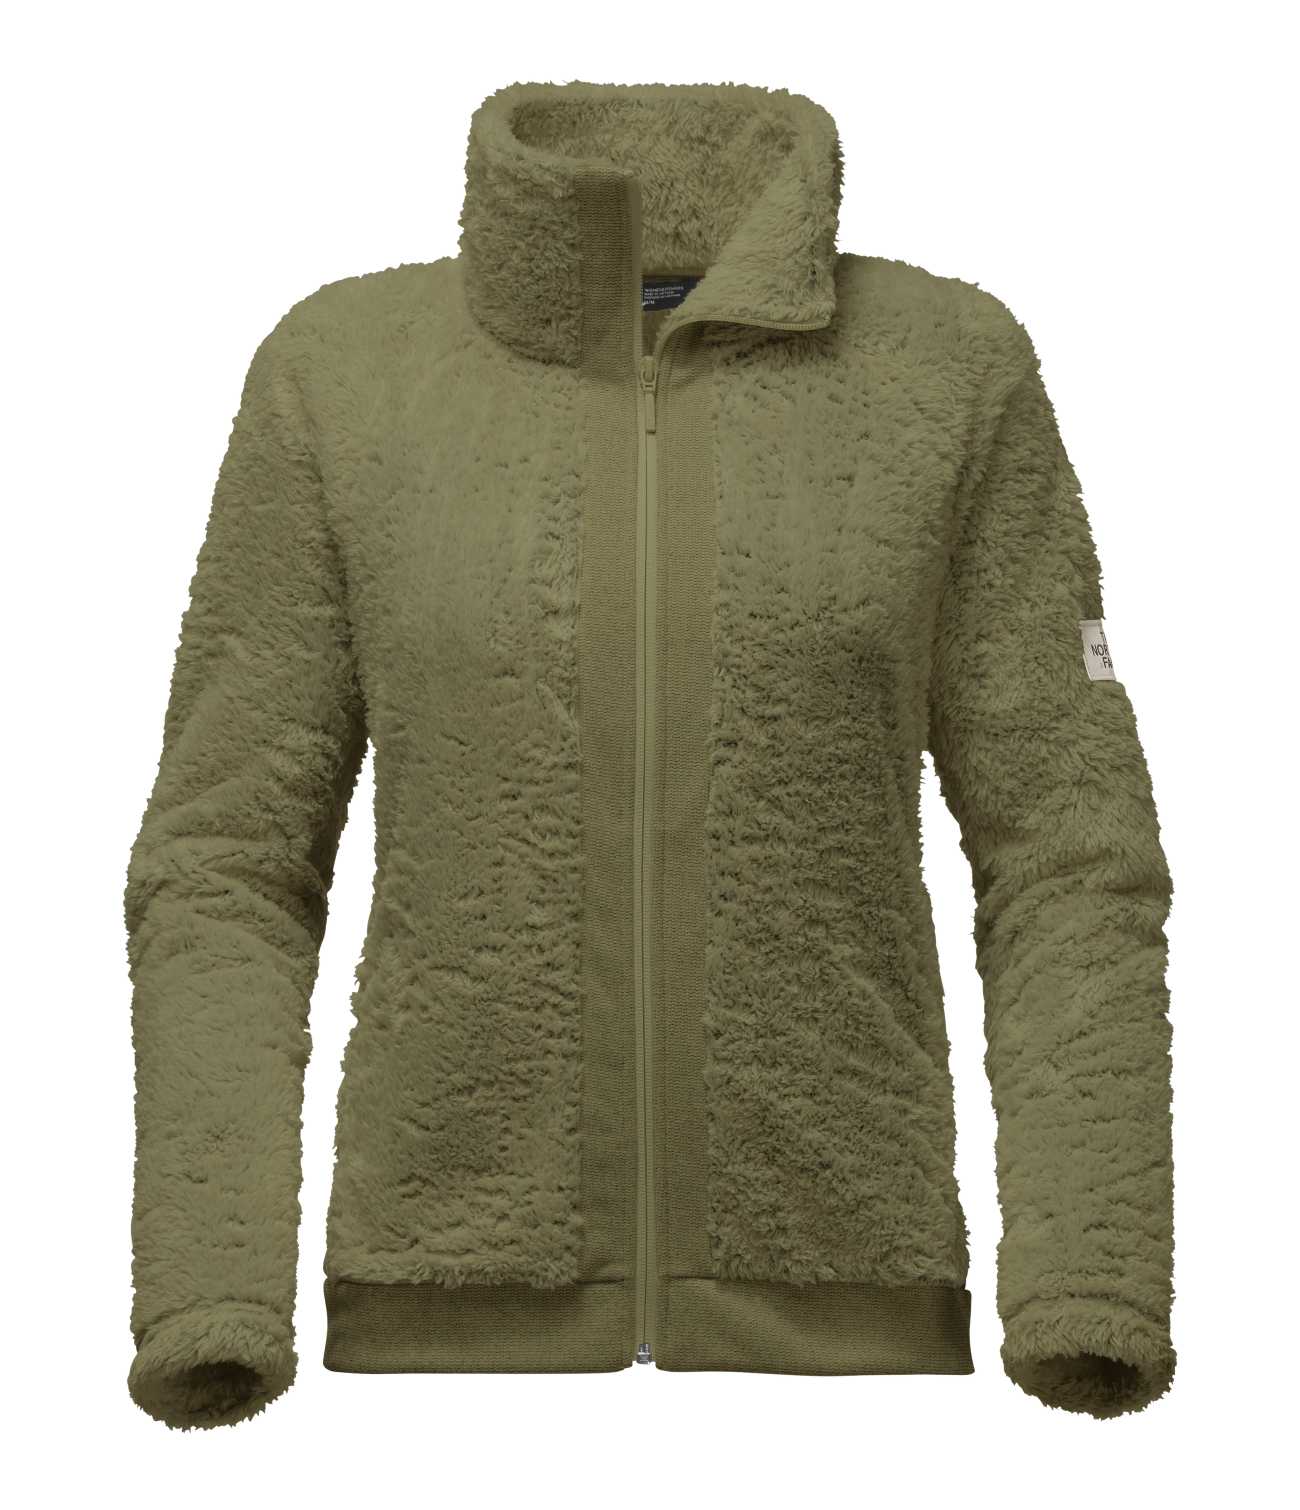 Ladies' The North Face Full-Zip Fleece Jacket - The Hershey